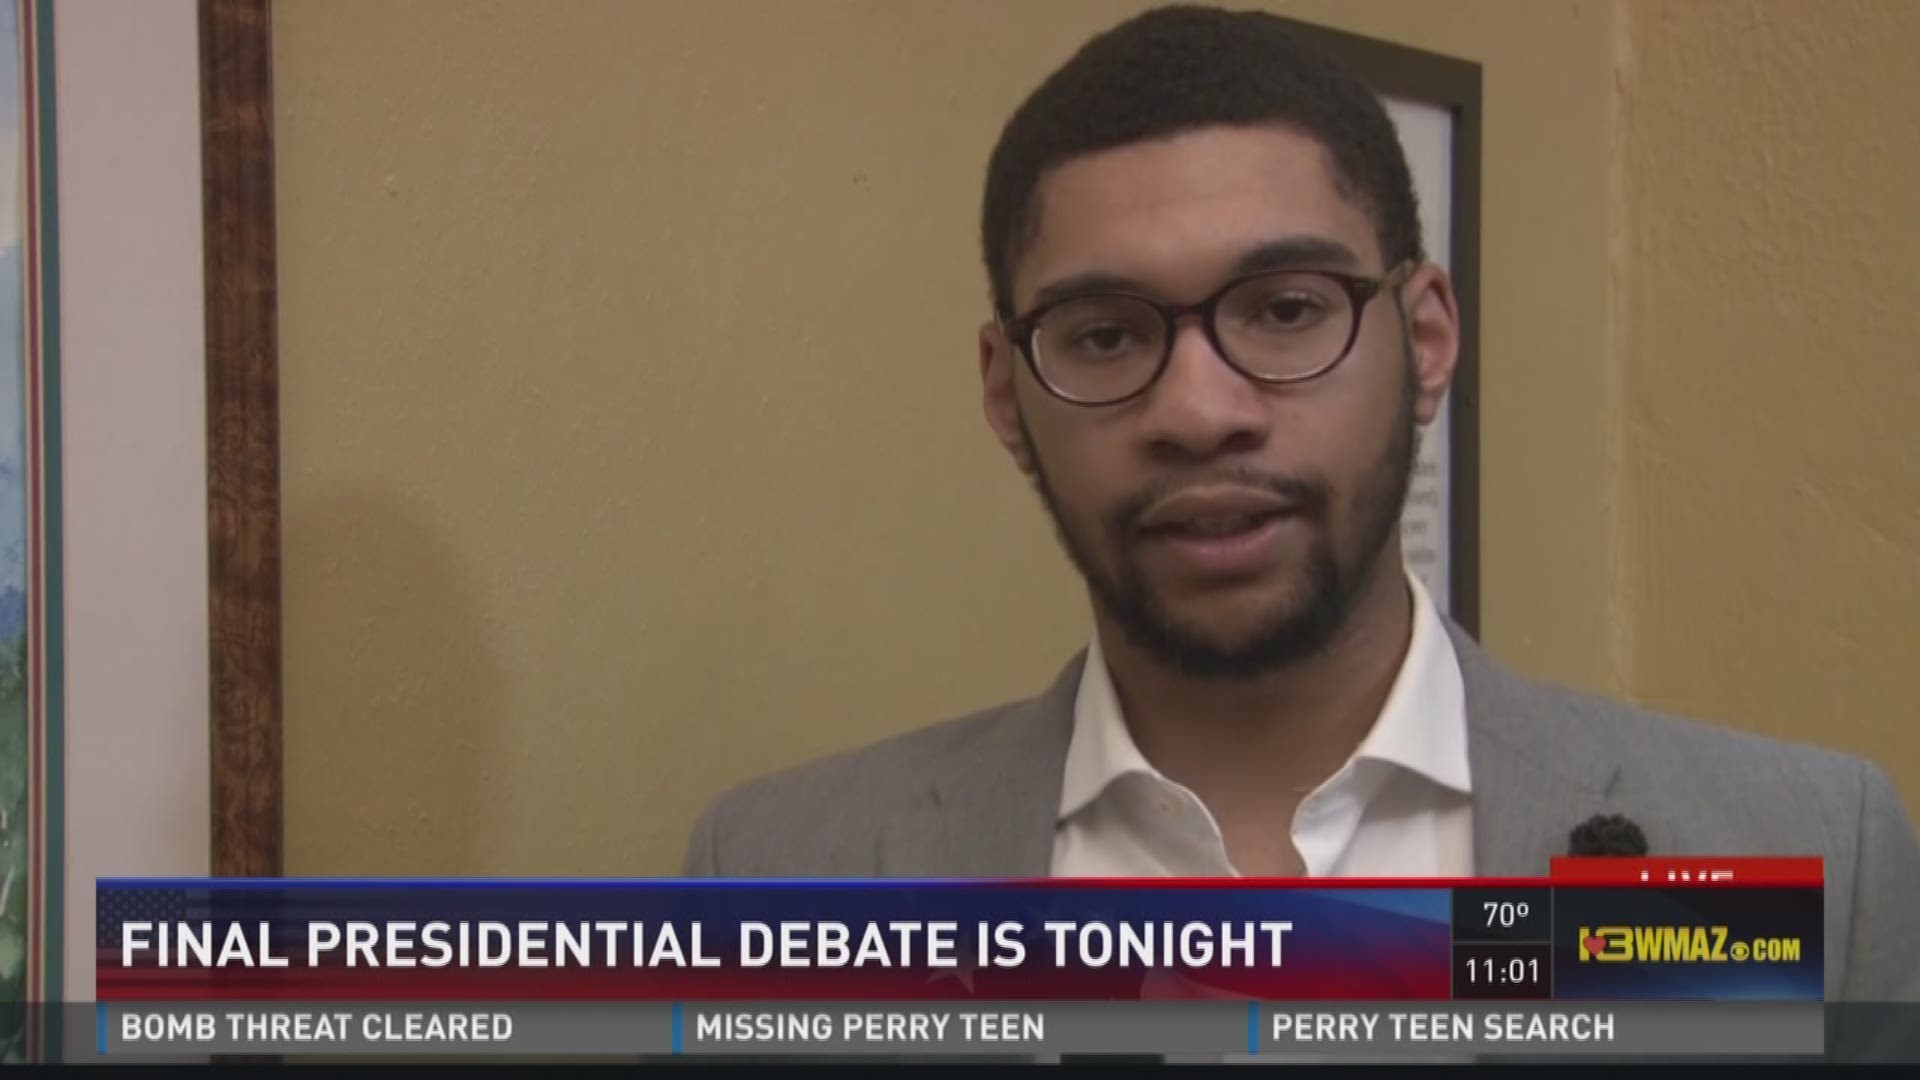 Mercer students react to final presidential debate